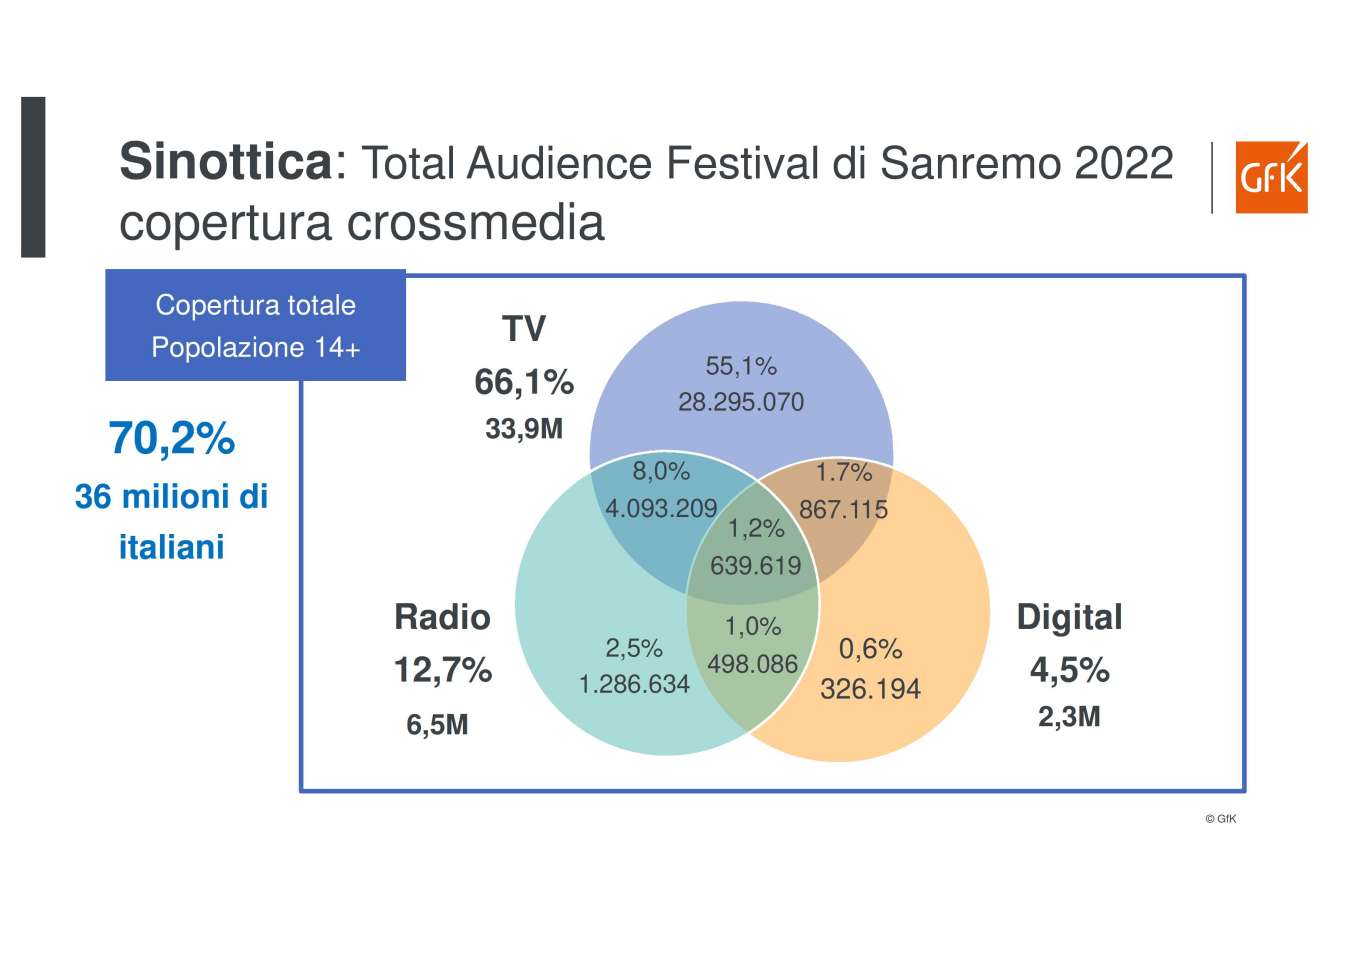 Ricerca GfK sulla Total Audience con il caso Festival di Sanremo